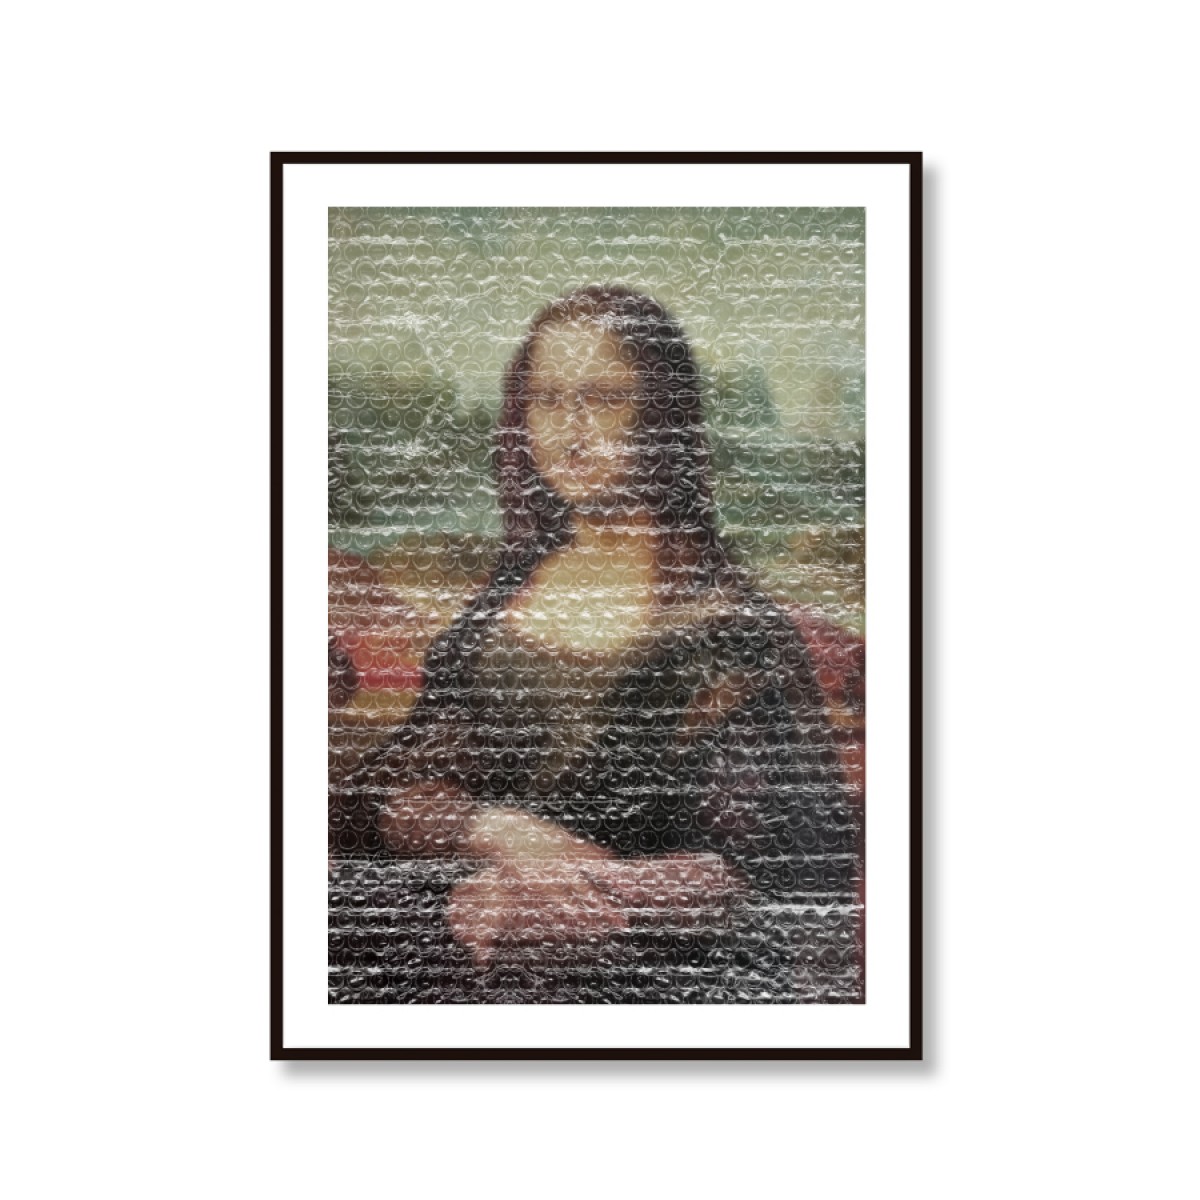 Amy & Kurt Berlin A3 Artprint "Mona Lisa"